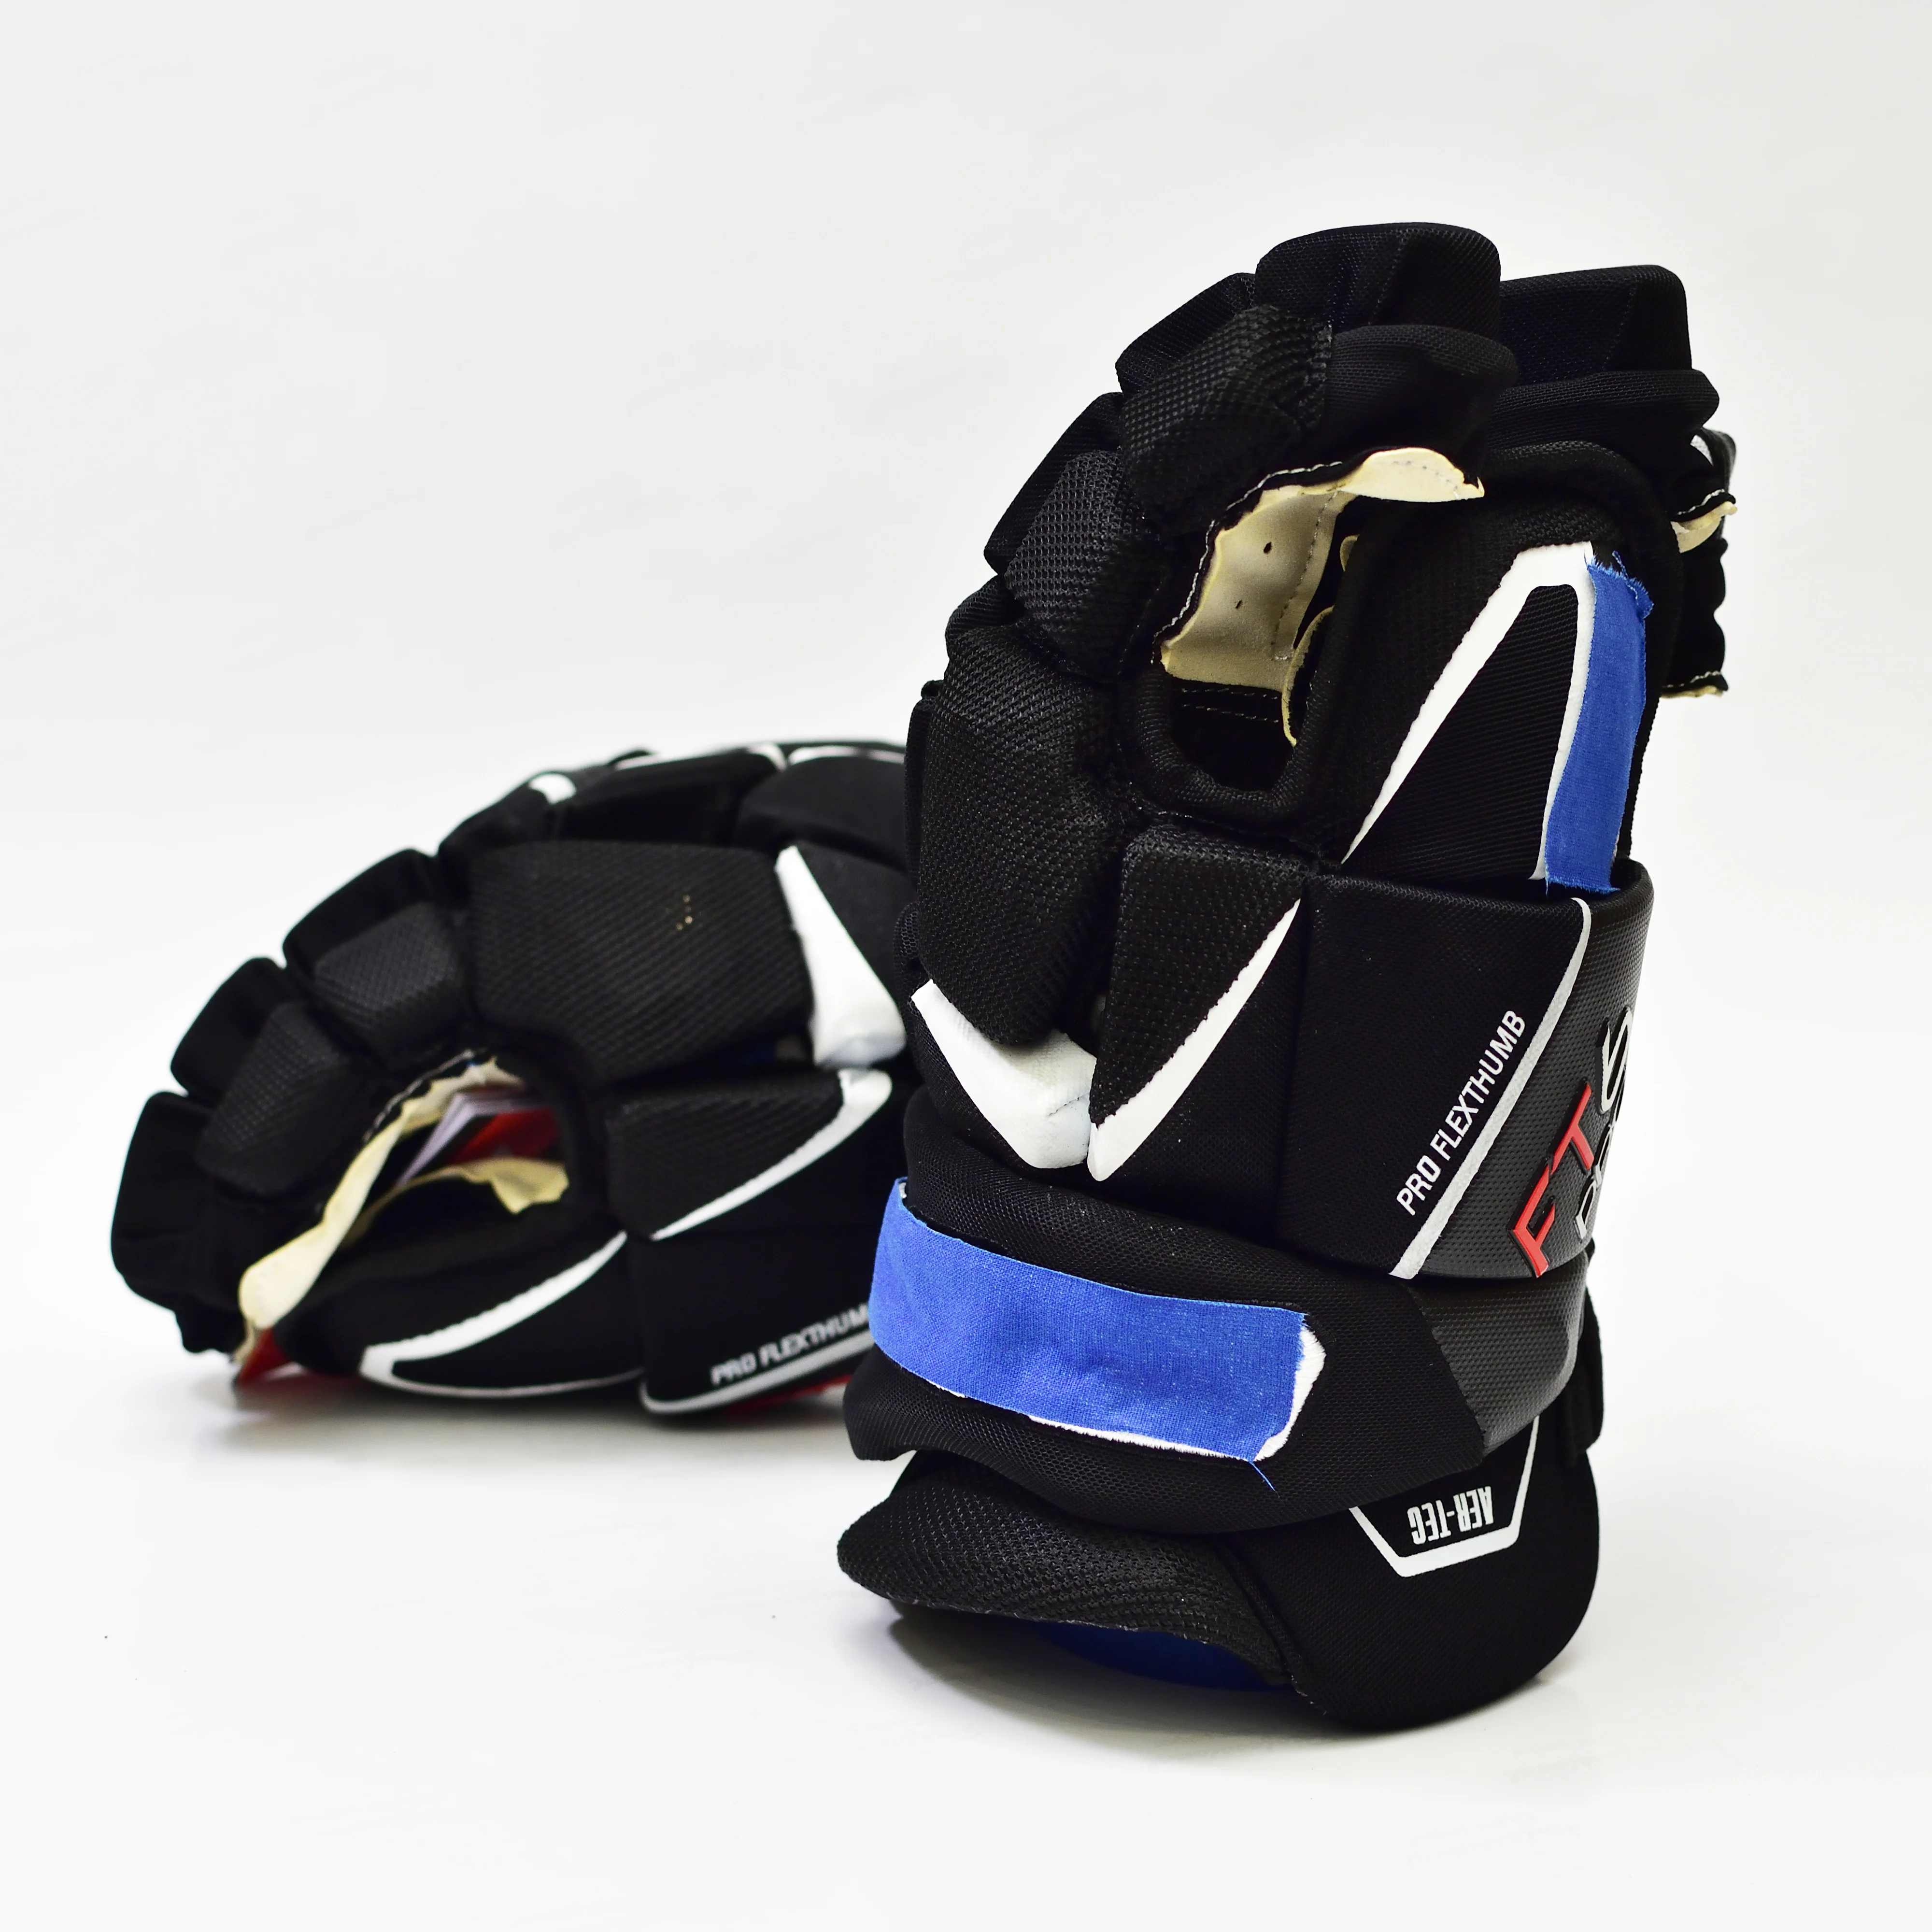 

[1 пара][FT6] Новые перчатки для хоккея с шайбой от бренда BAU FT6, 13 дюймов, профессиональные перчатки для хоккея спортсменов